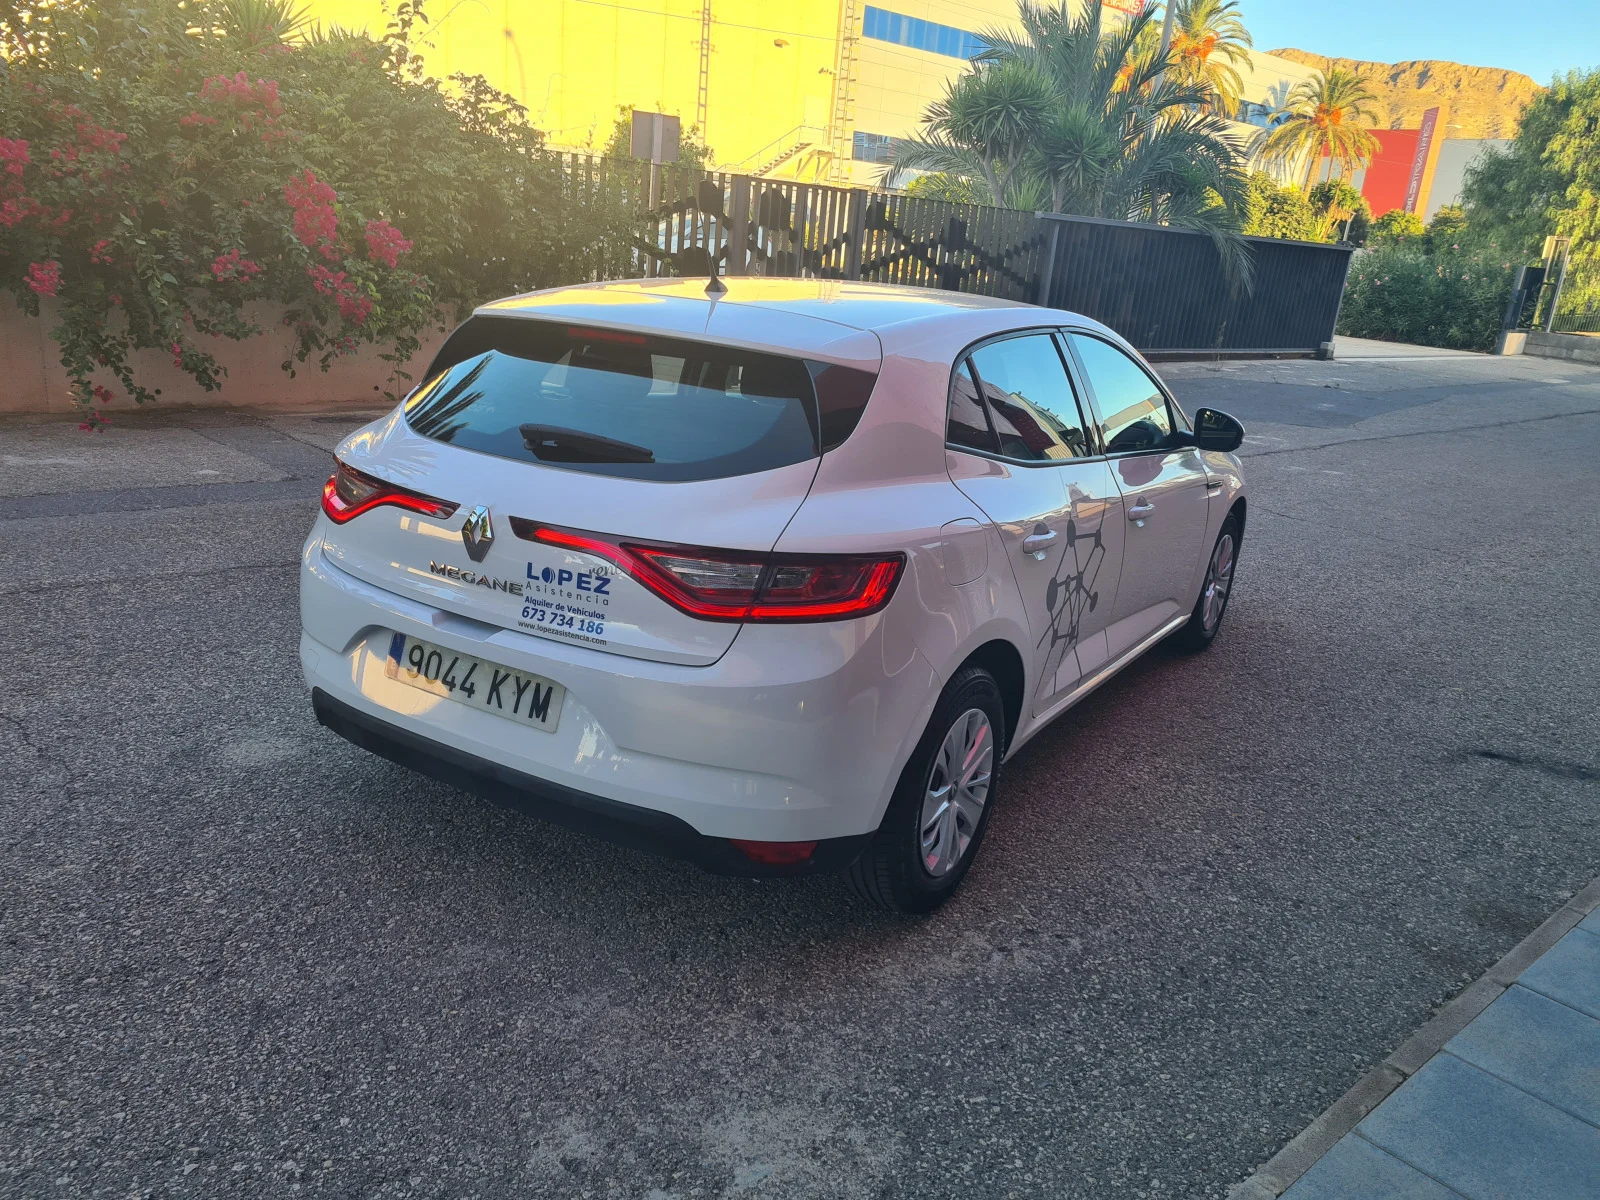 Alquiler de Vehículos en Alicante - Lopez Rent a Car